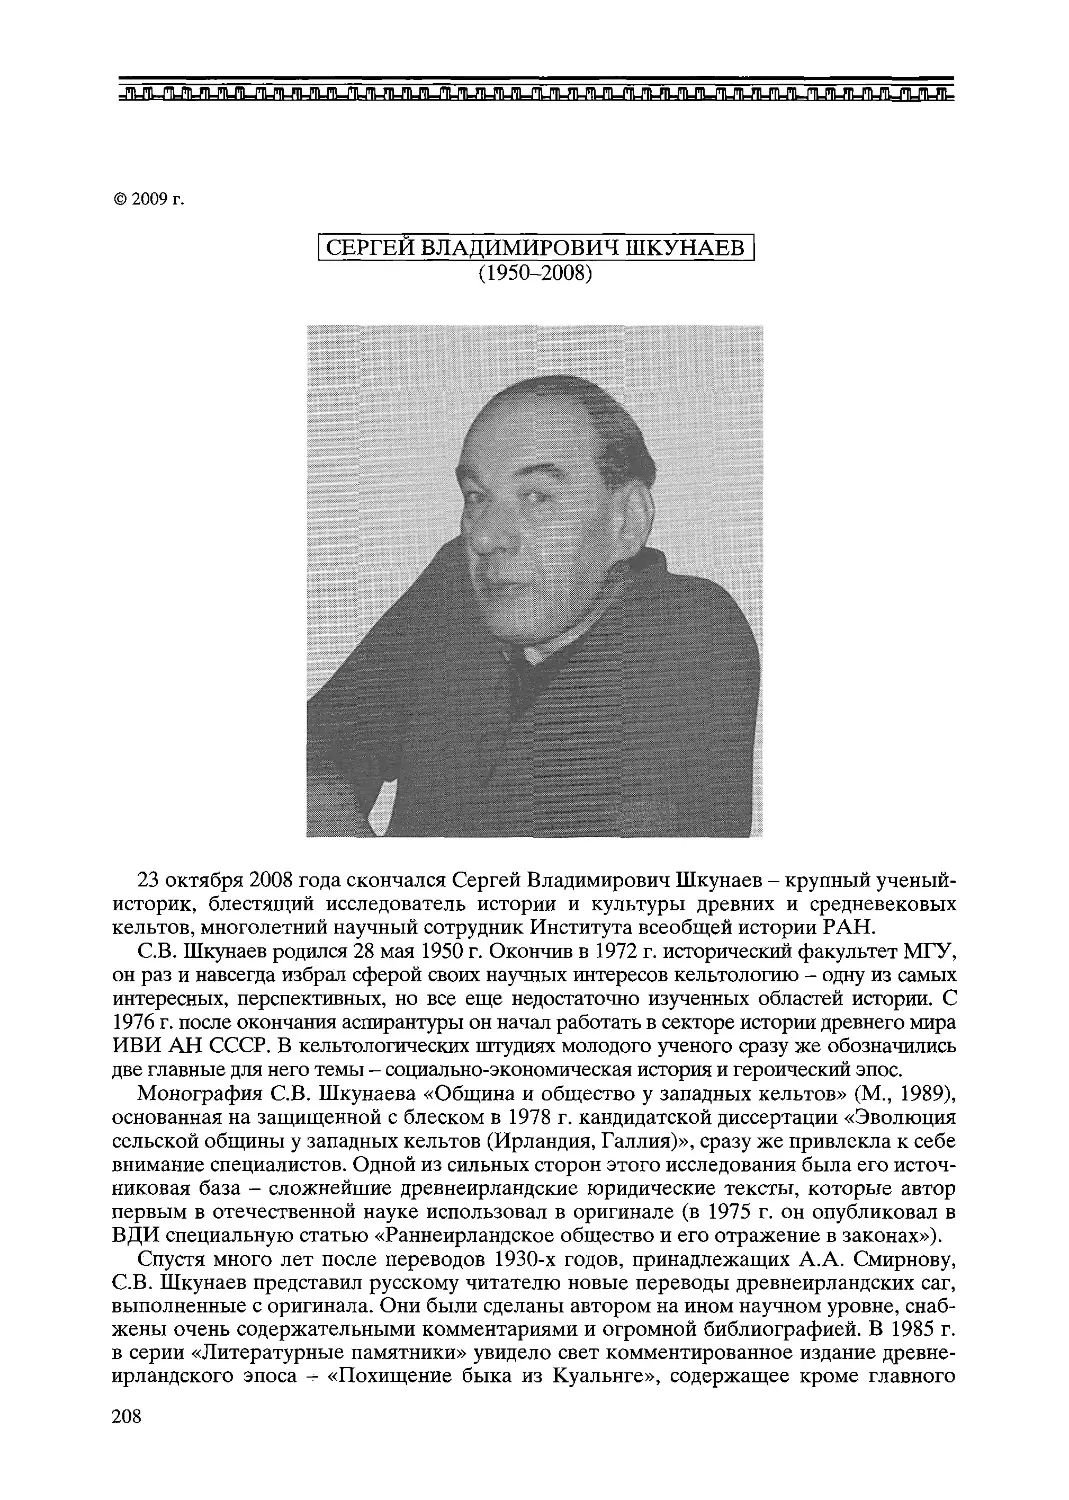 ﻿Сергей Владимирович Ӹкунаев ø1950 - 2008